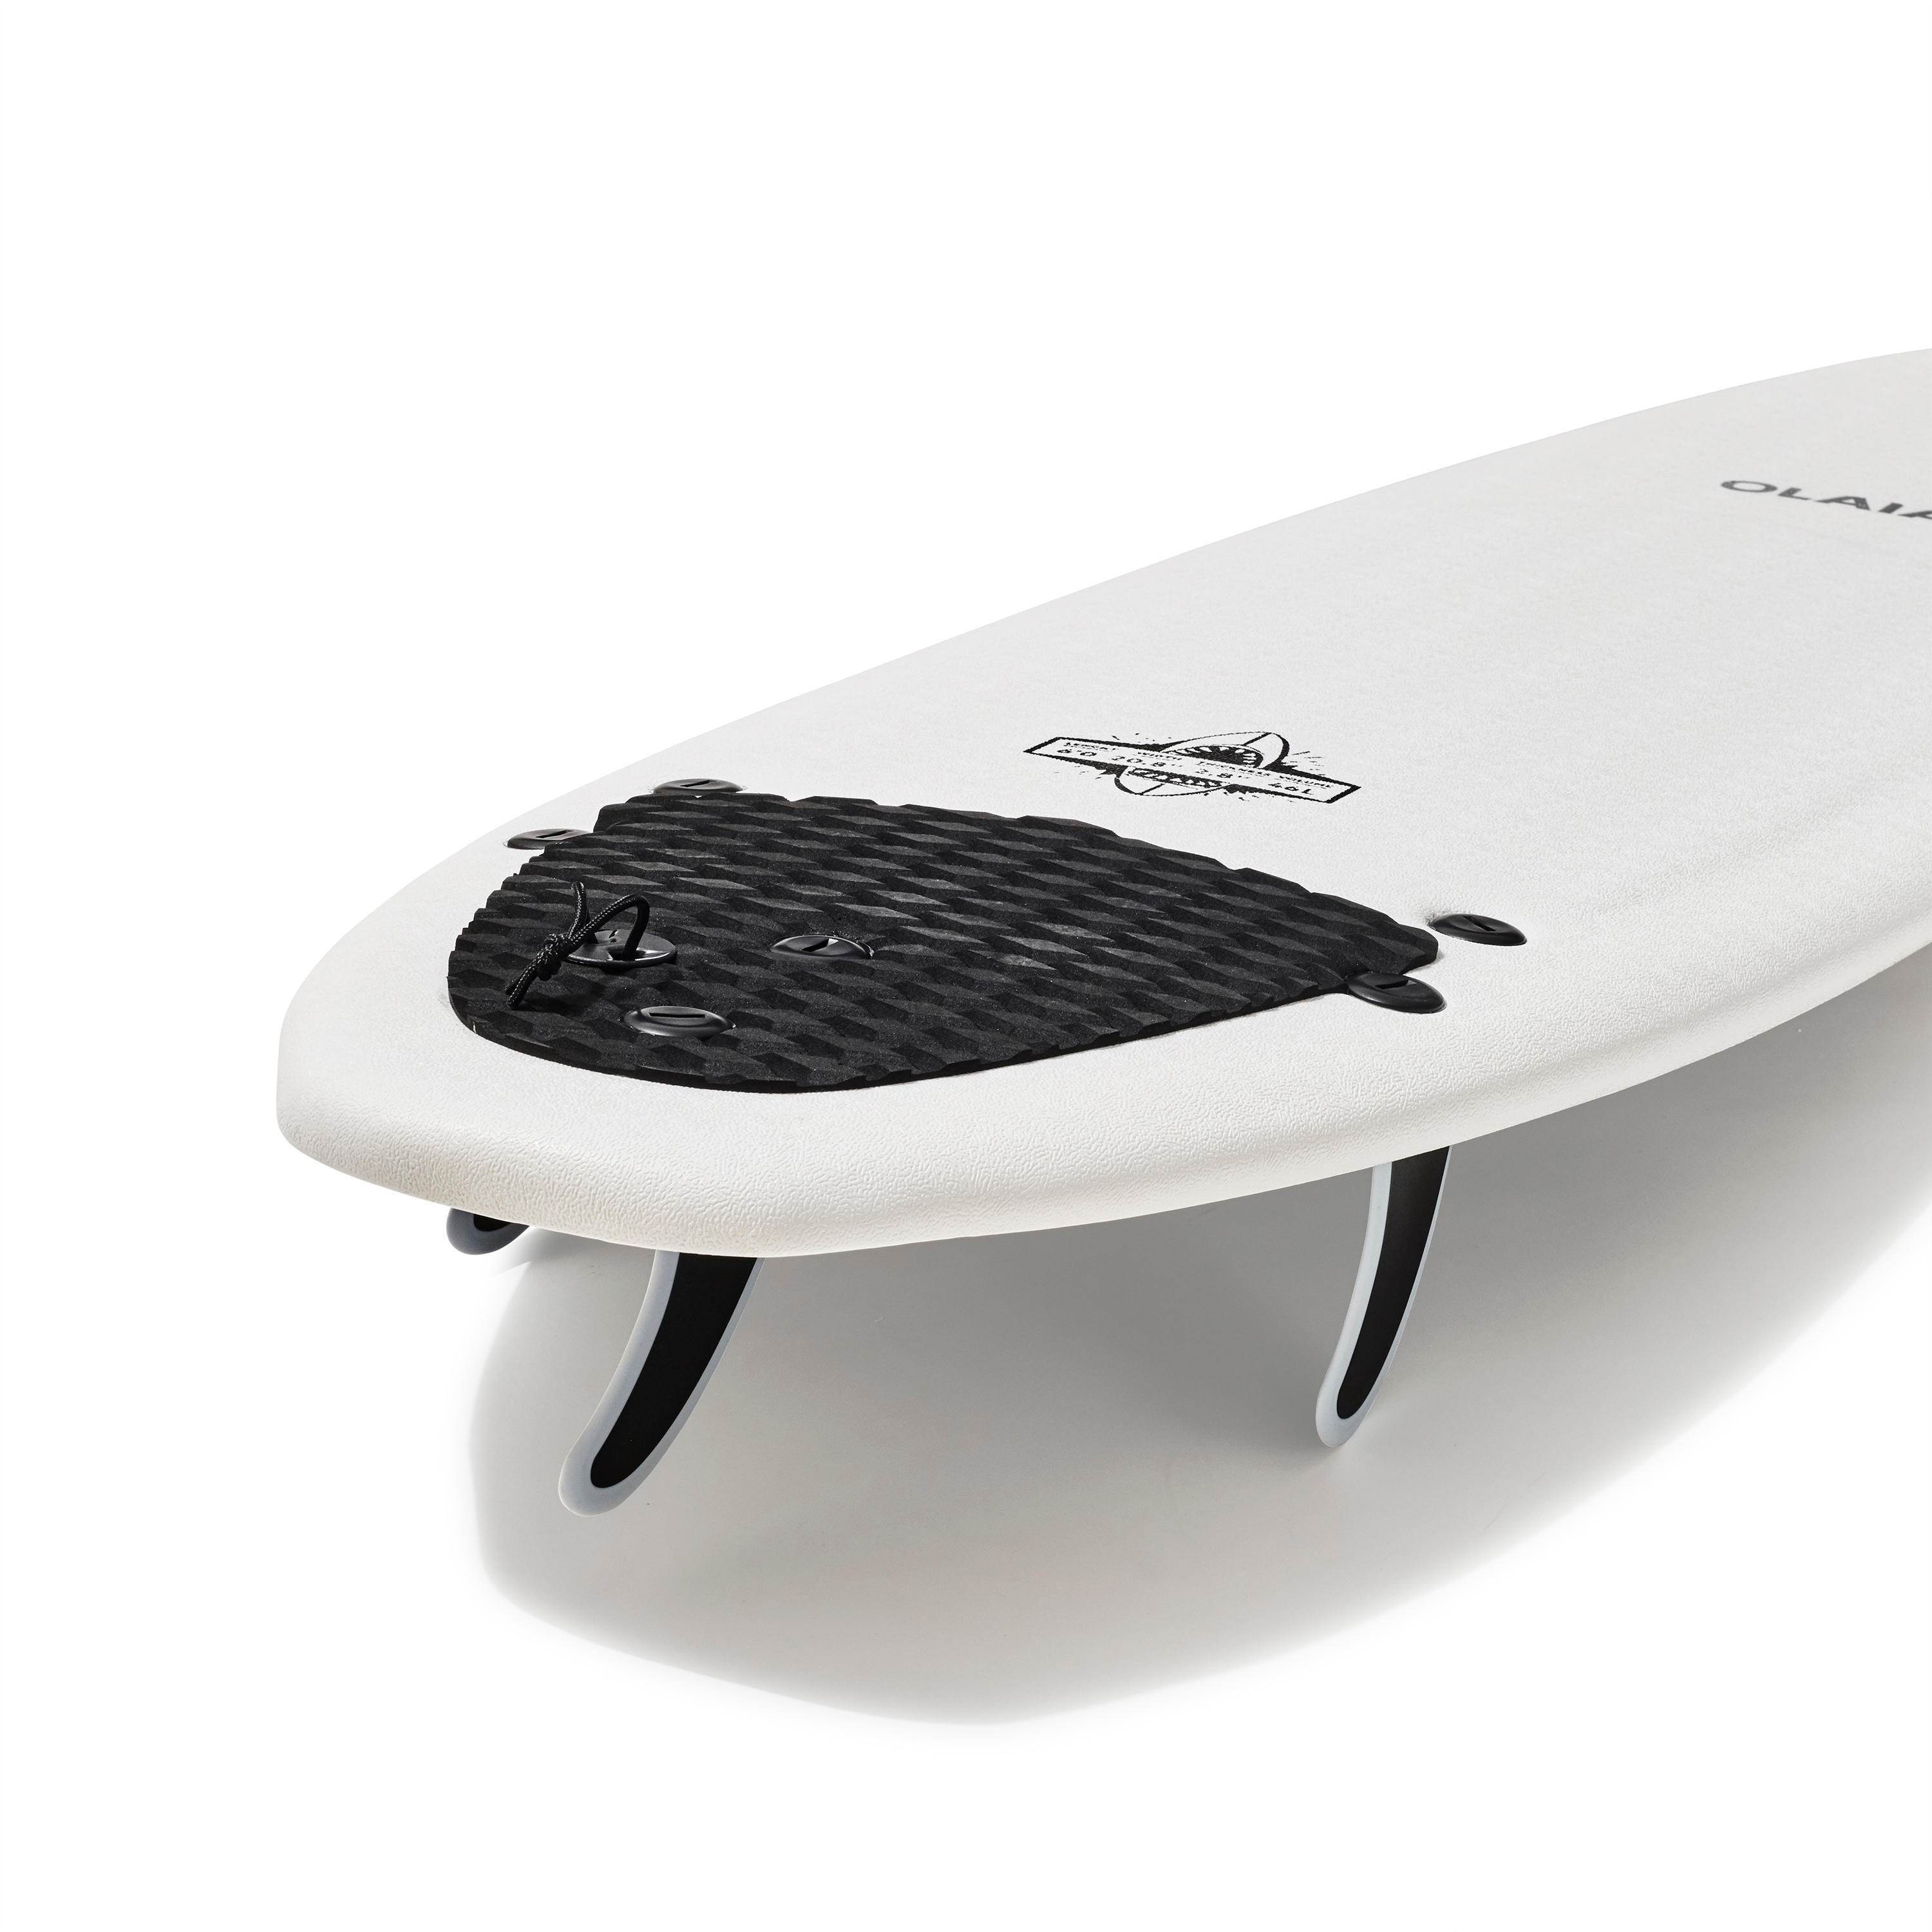 FOAM SURFBOARD 900 6' with 3 fins. 10/14